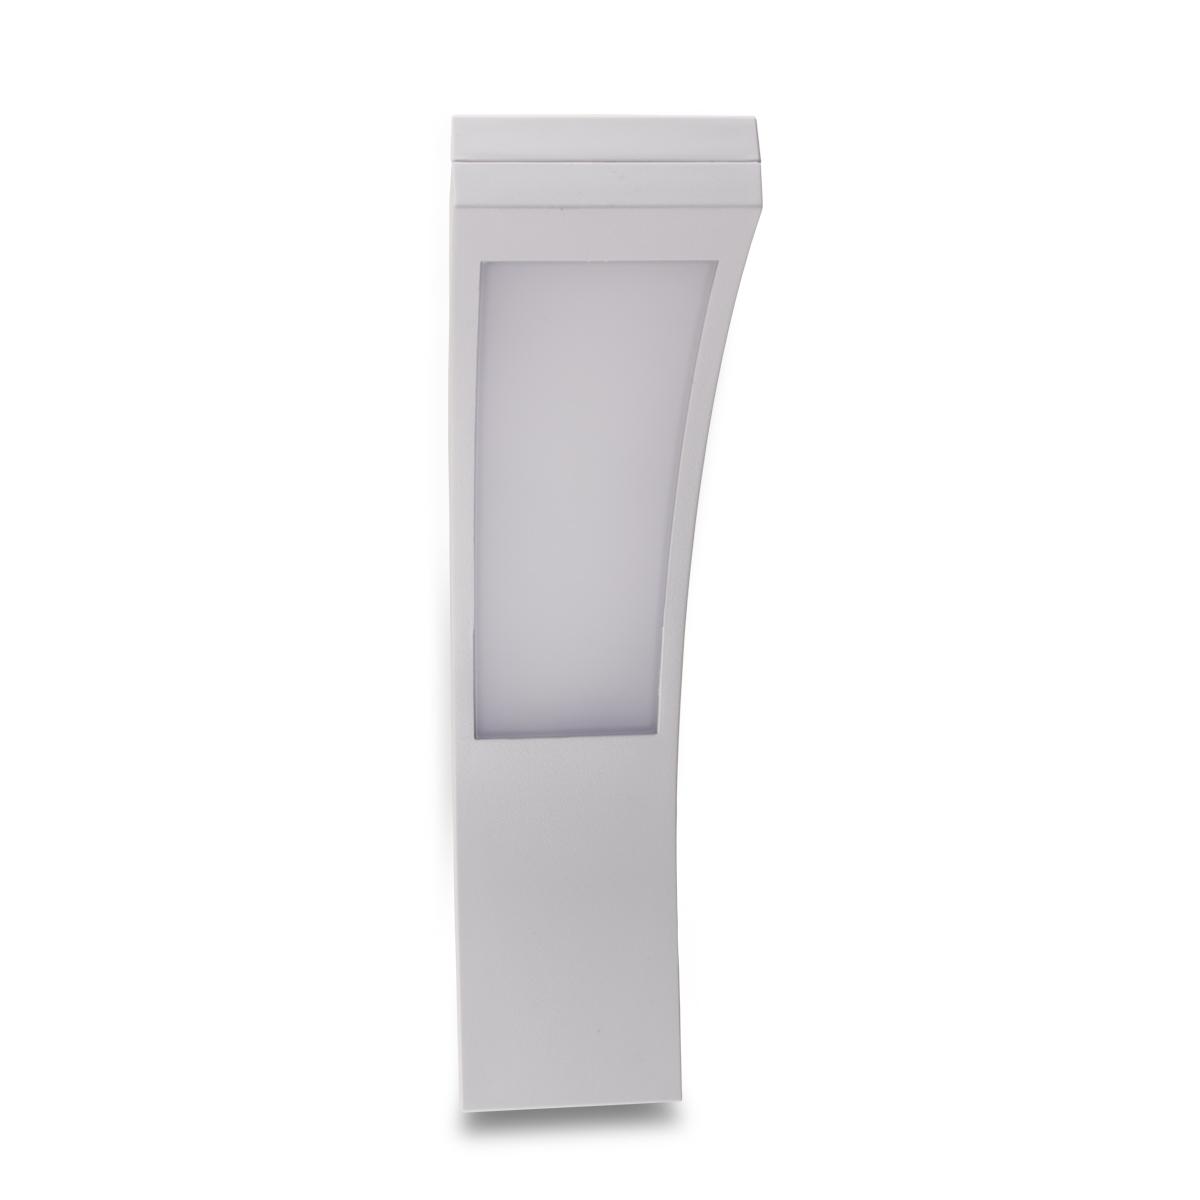 Weisse LED Wandleuchte Außenleuchte neutralweiß 4000 Kelvin IP54 - Parcolux  - LED Leuchtmittel Onlineshop